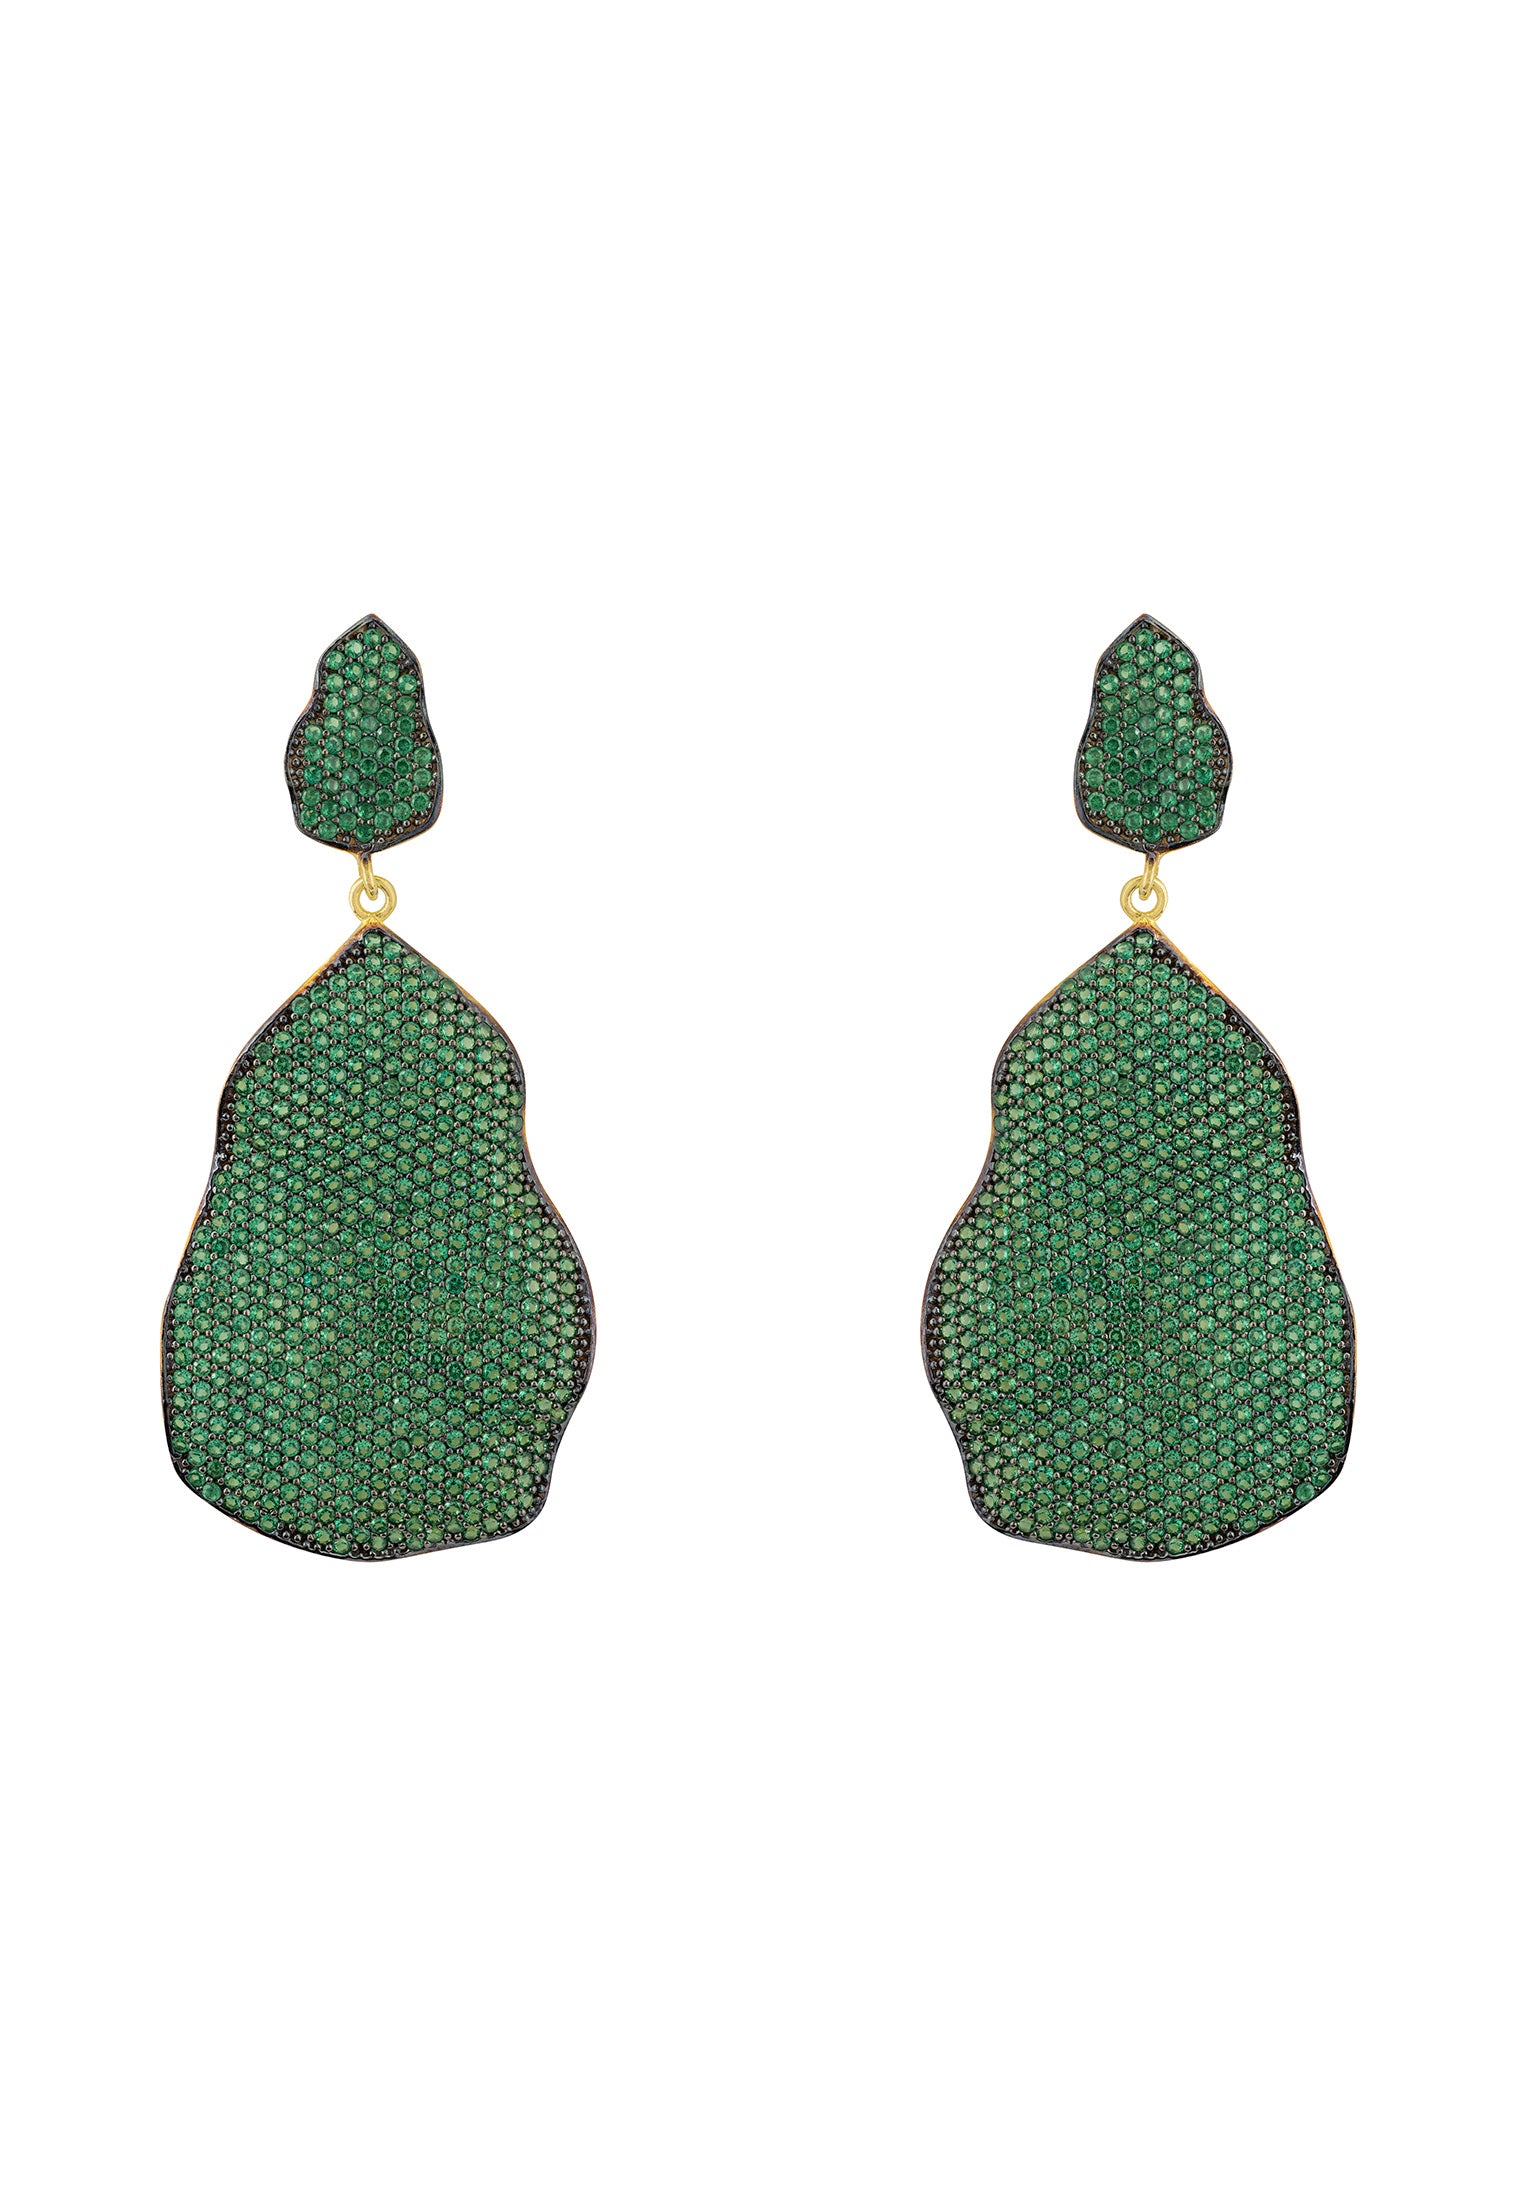 St Tropez Drop Earrings Gold Emerald CZ